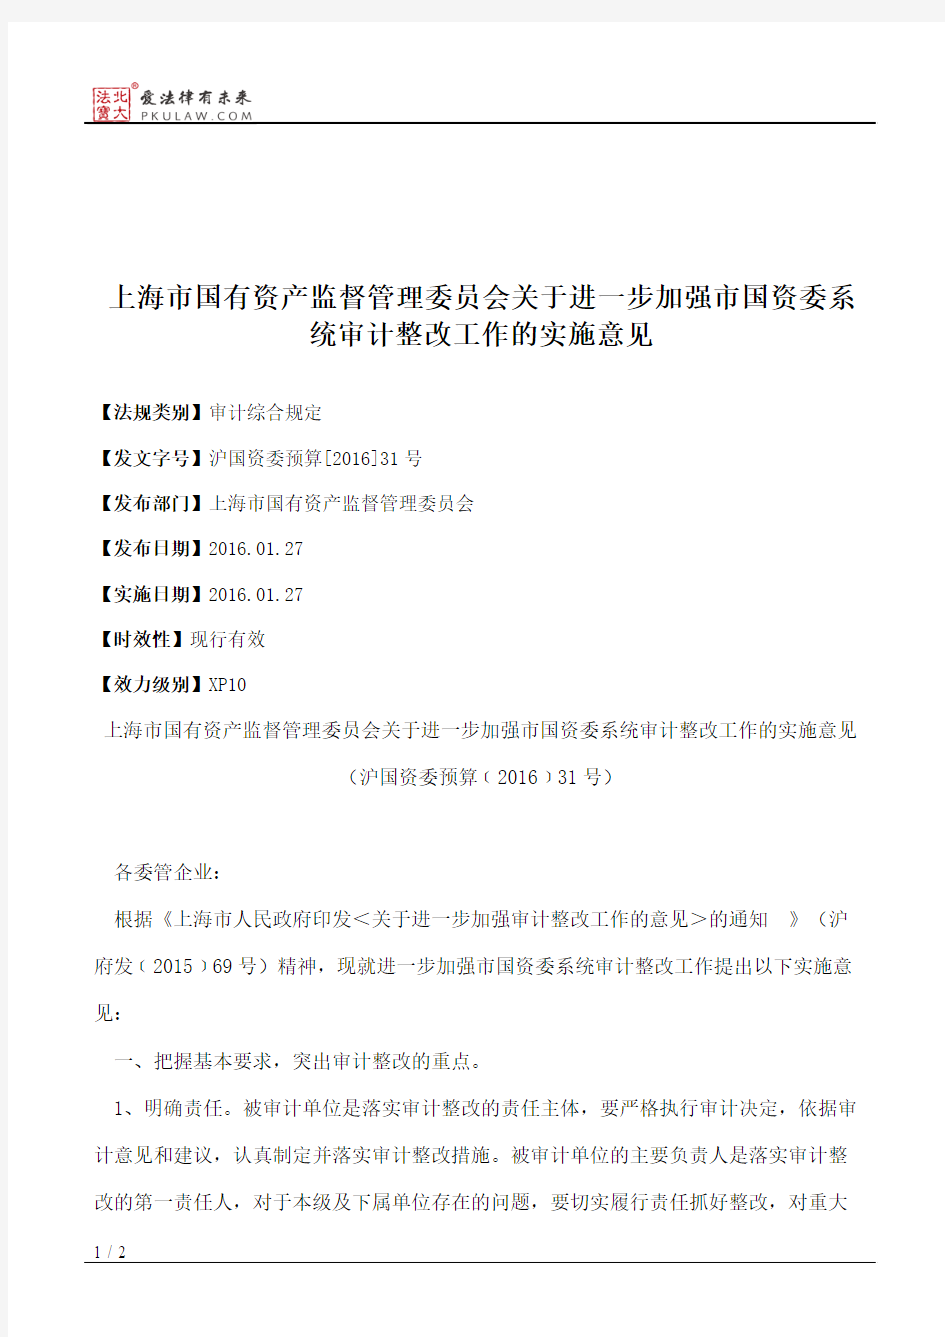 上海市国有资产监督管理委员会关于进一步加强市国资委系统审计整